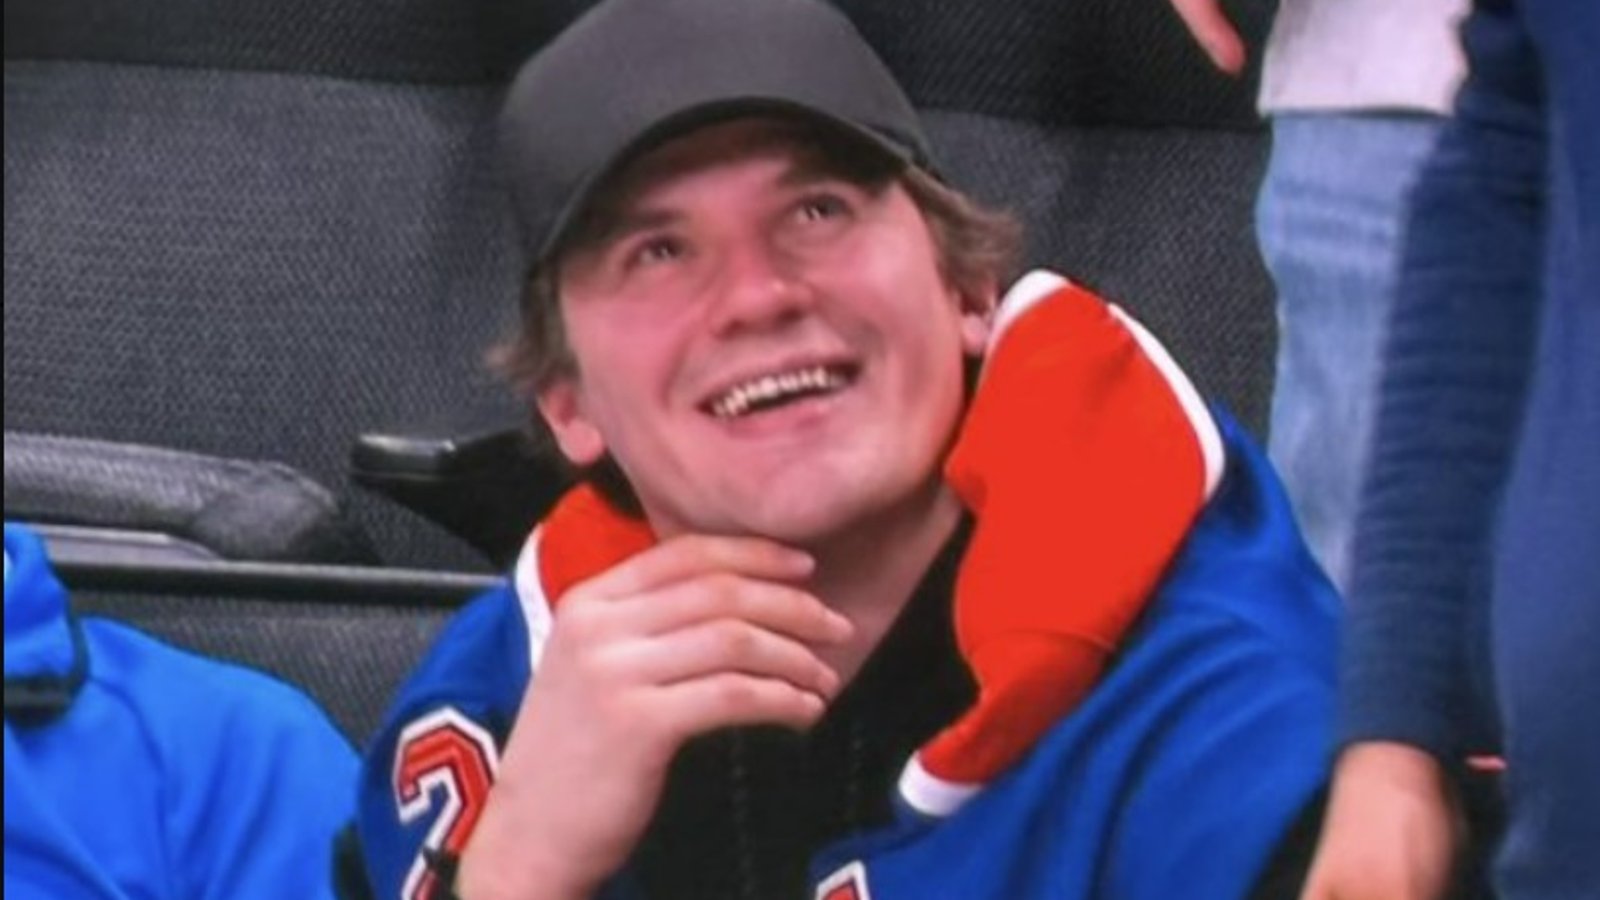 Un joueur des Sharks s'affiche au match d'hier avec un chandail des Oilers